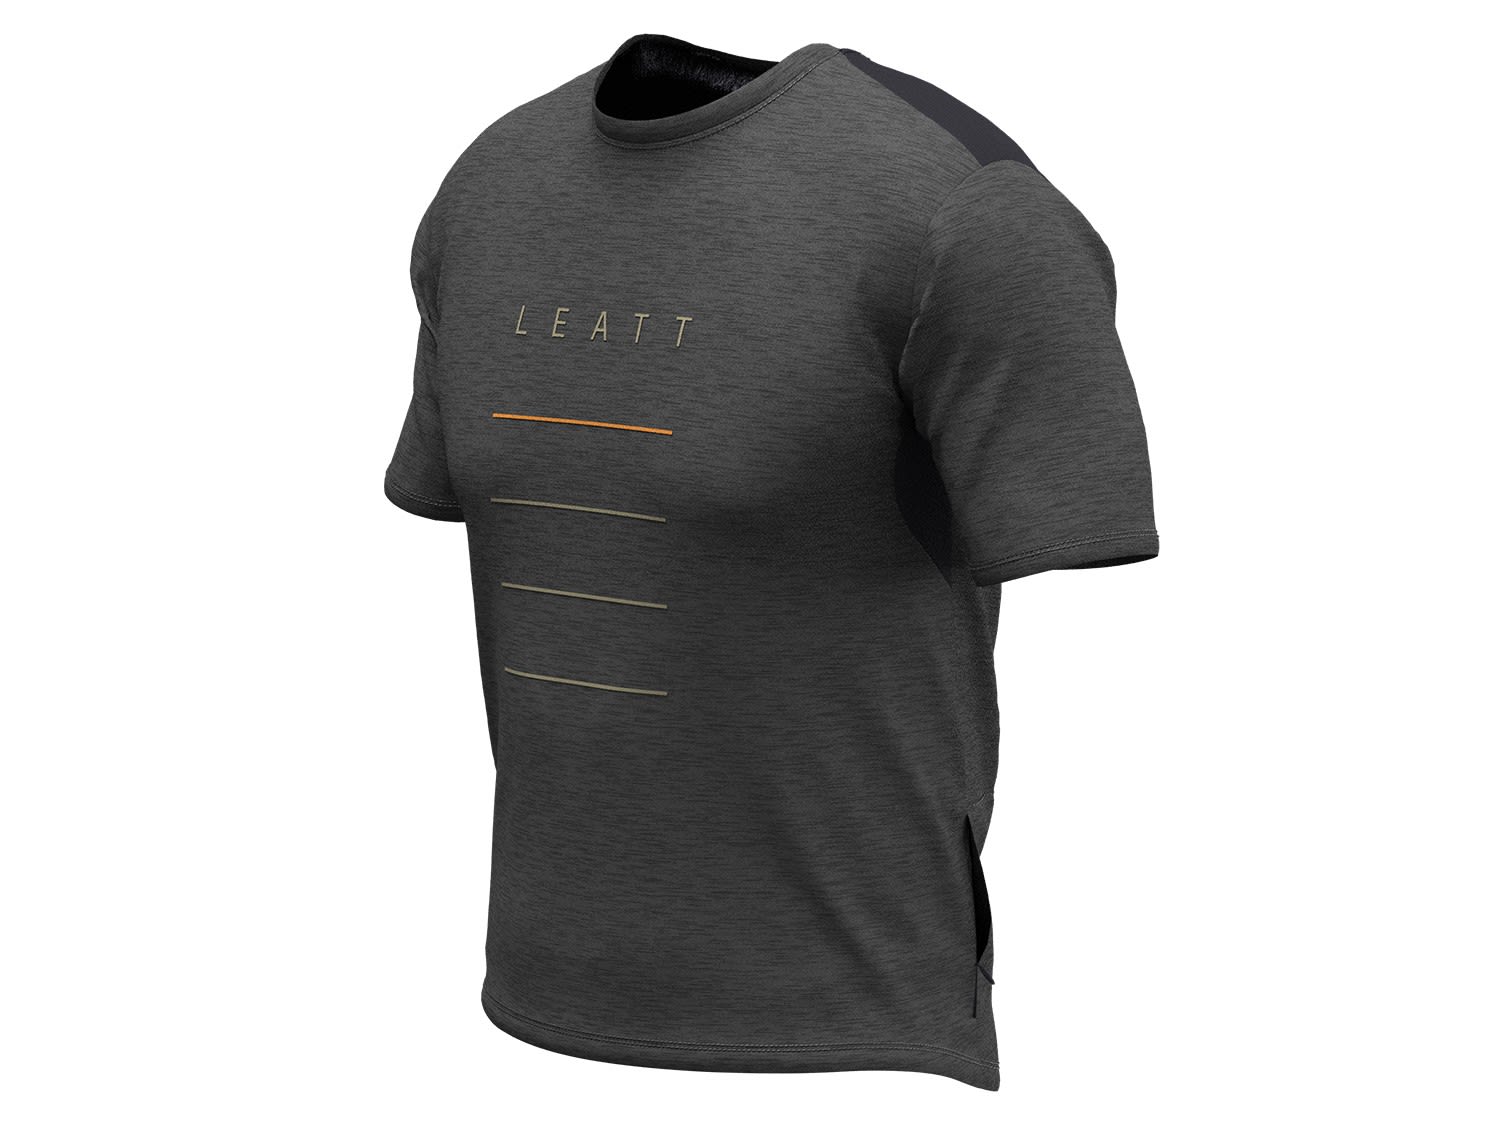 Leatt MTB Trail 1-0 Jersey Grau- Male Kurzarm-Shirts- Grsse S - Farbe Black unter Leatt